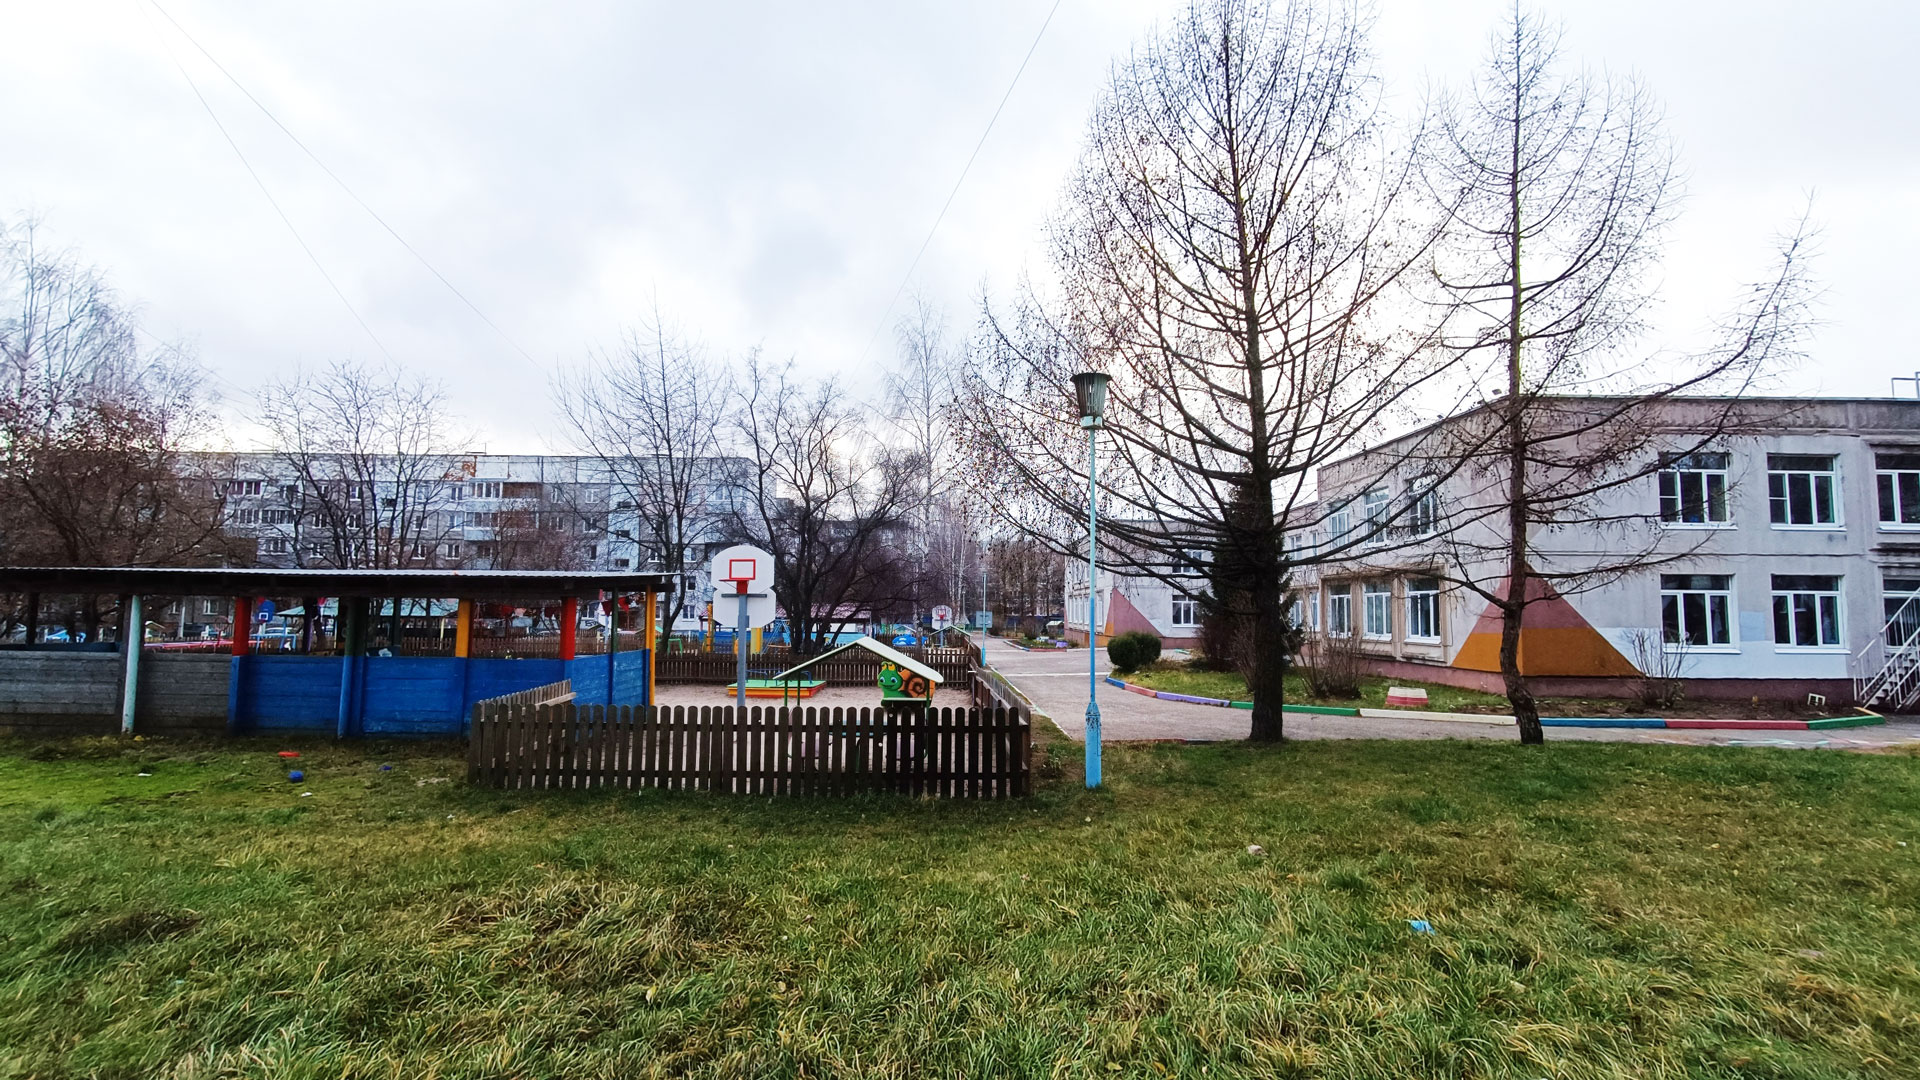 Детский сад 203 Ярославль: панорамный вид здания и спортплощадки.